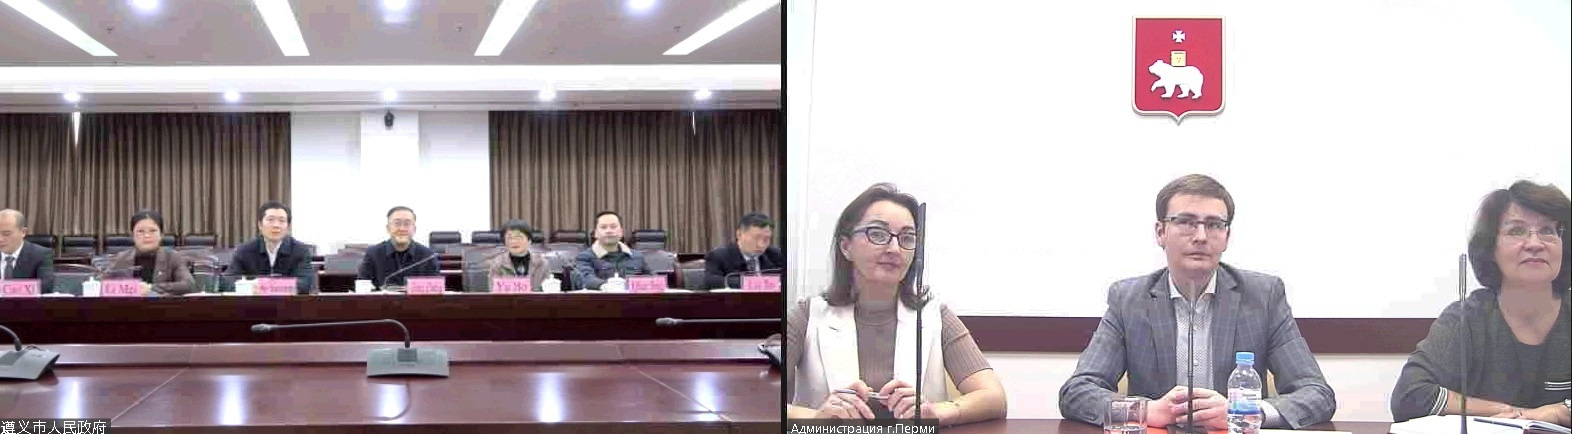 Встреча с представителями КНР прошла по видеосвязи